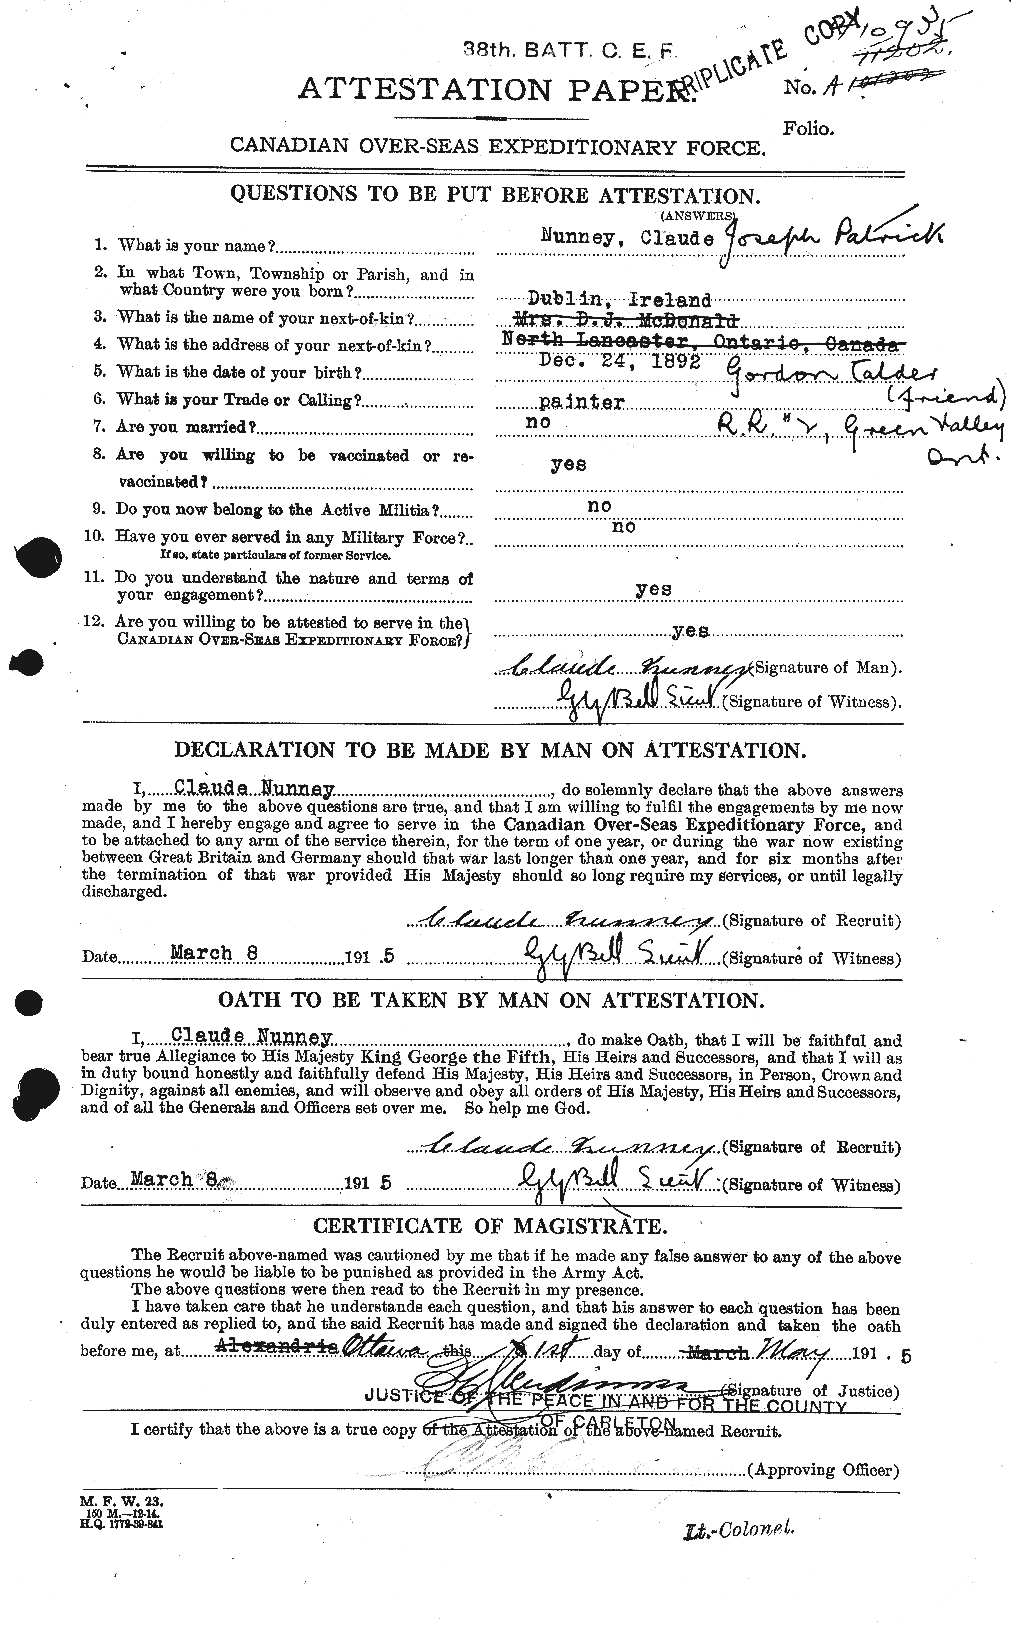 Dossiers du Personnel de la Première Guerre mondiale - CEC 206299a